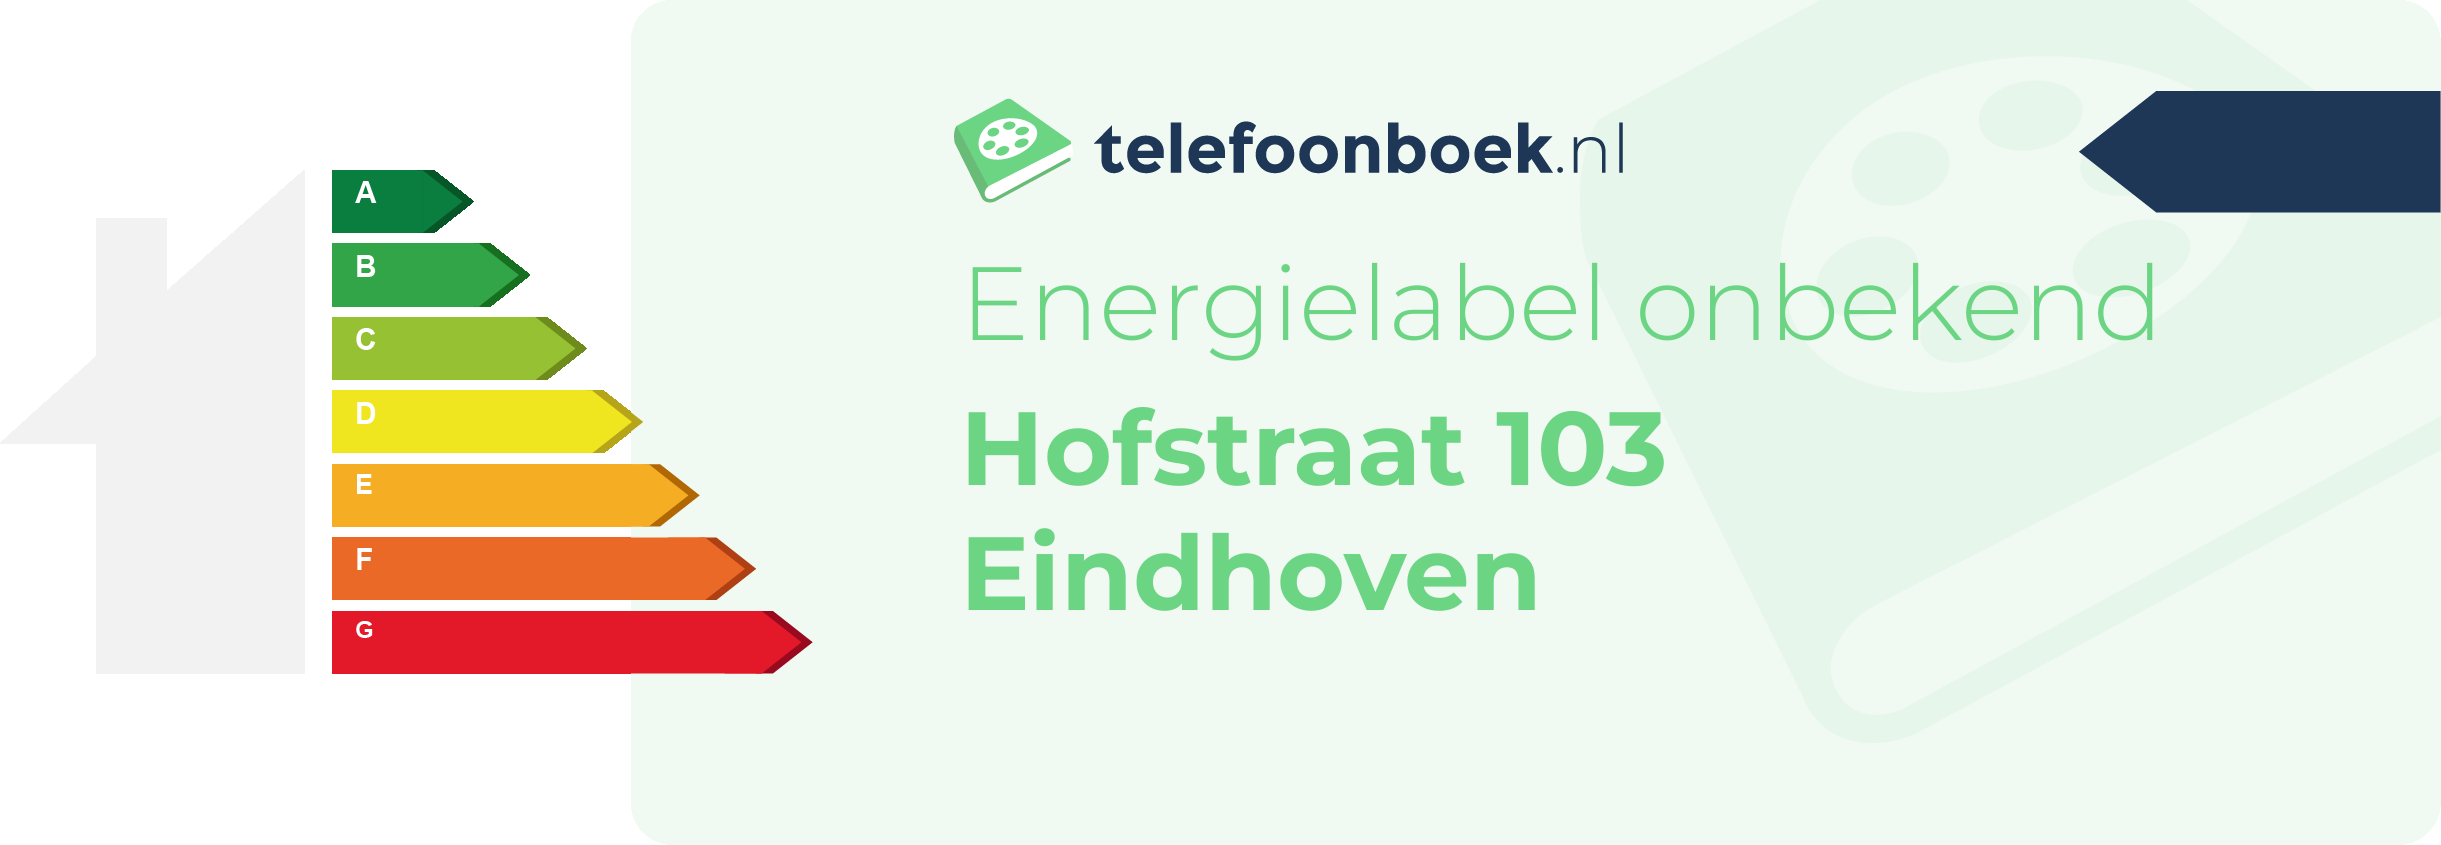 Energielabel Hofstraat 103 Eindhoven